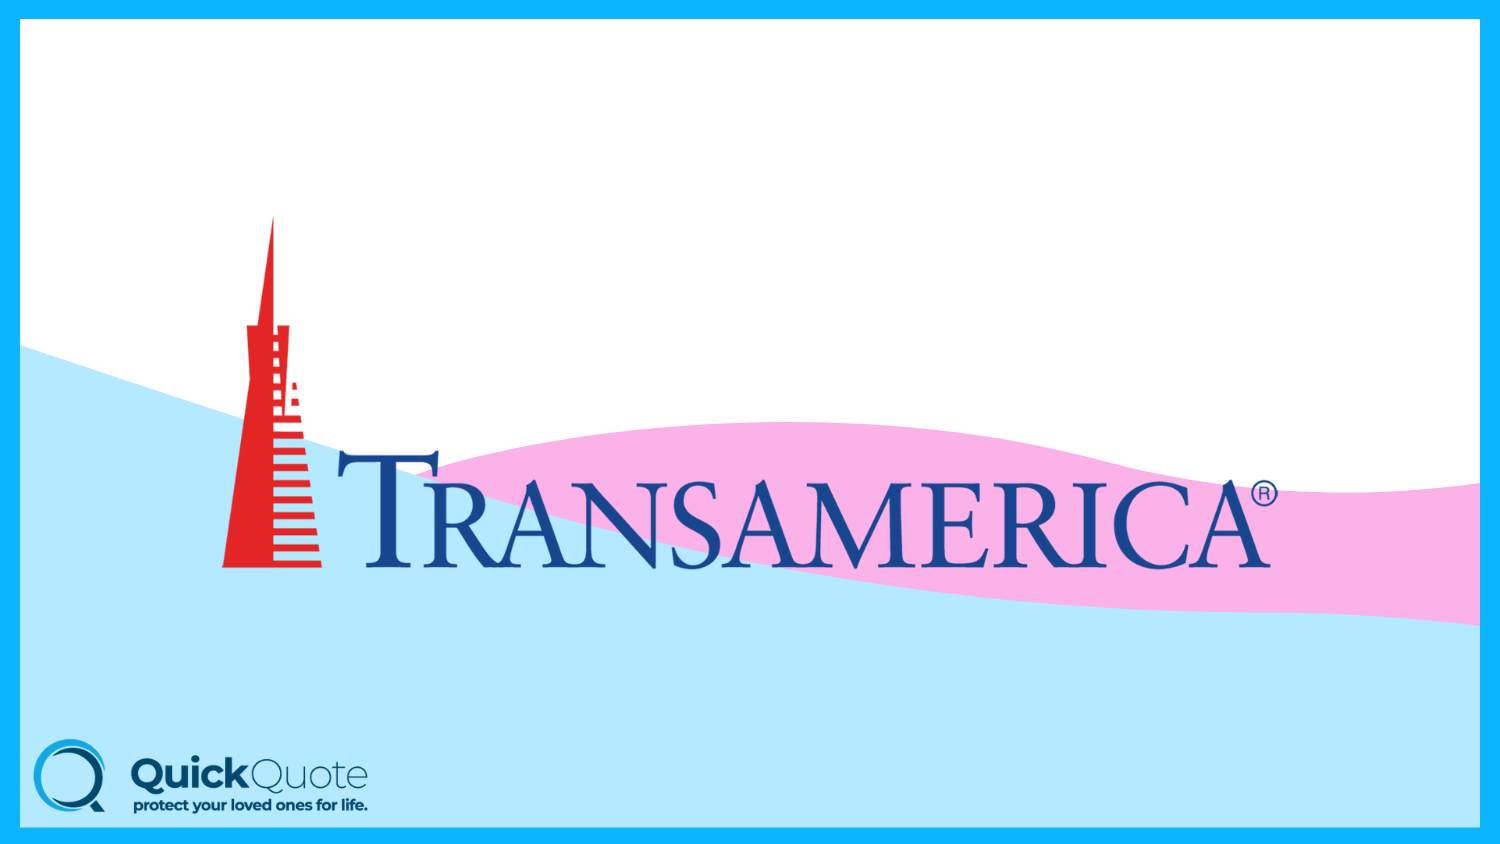 Transamerica: Best Life Insurance for Seniors 